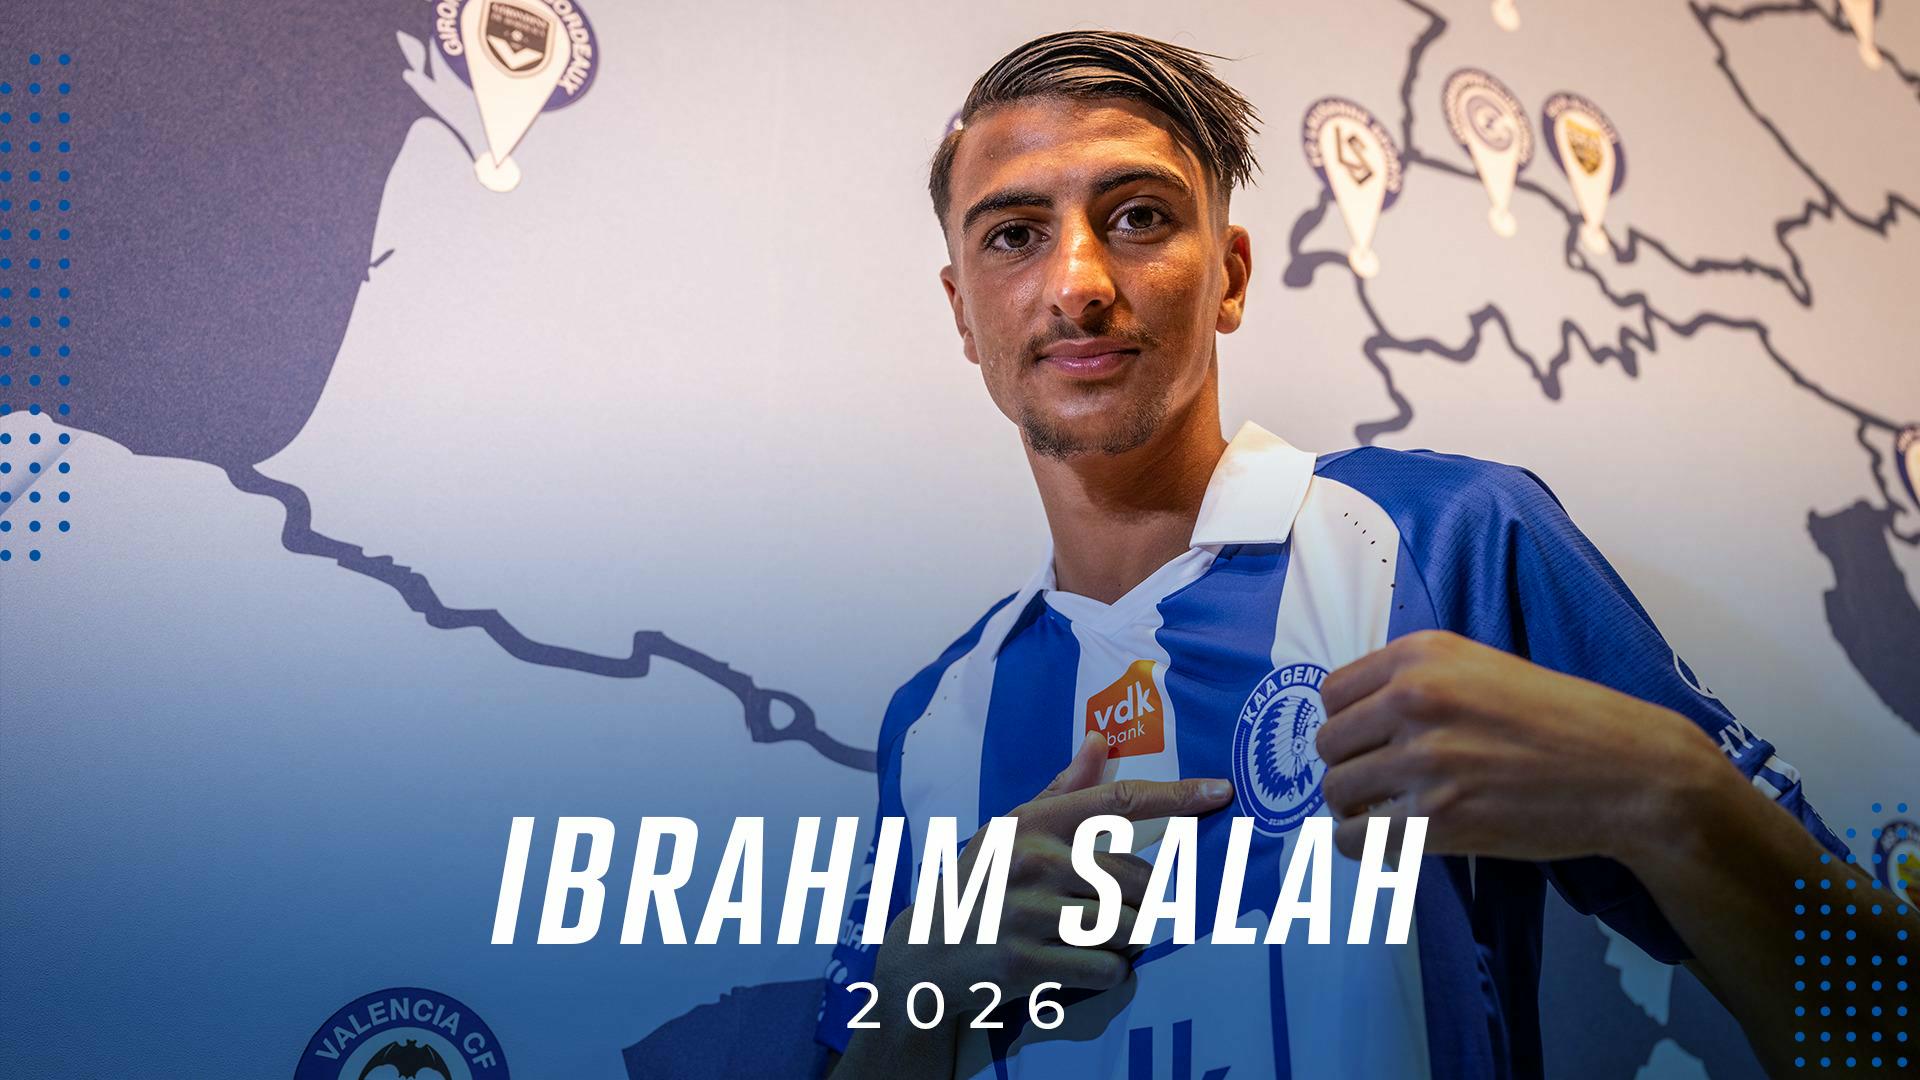 Ibrahim Salah tekent tot 2026